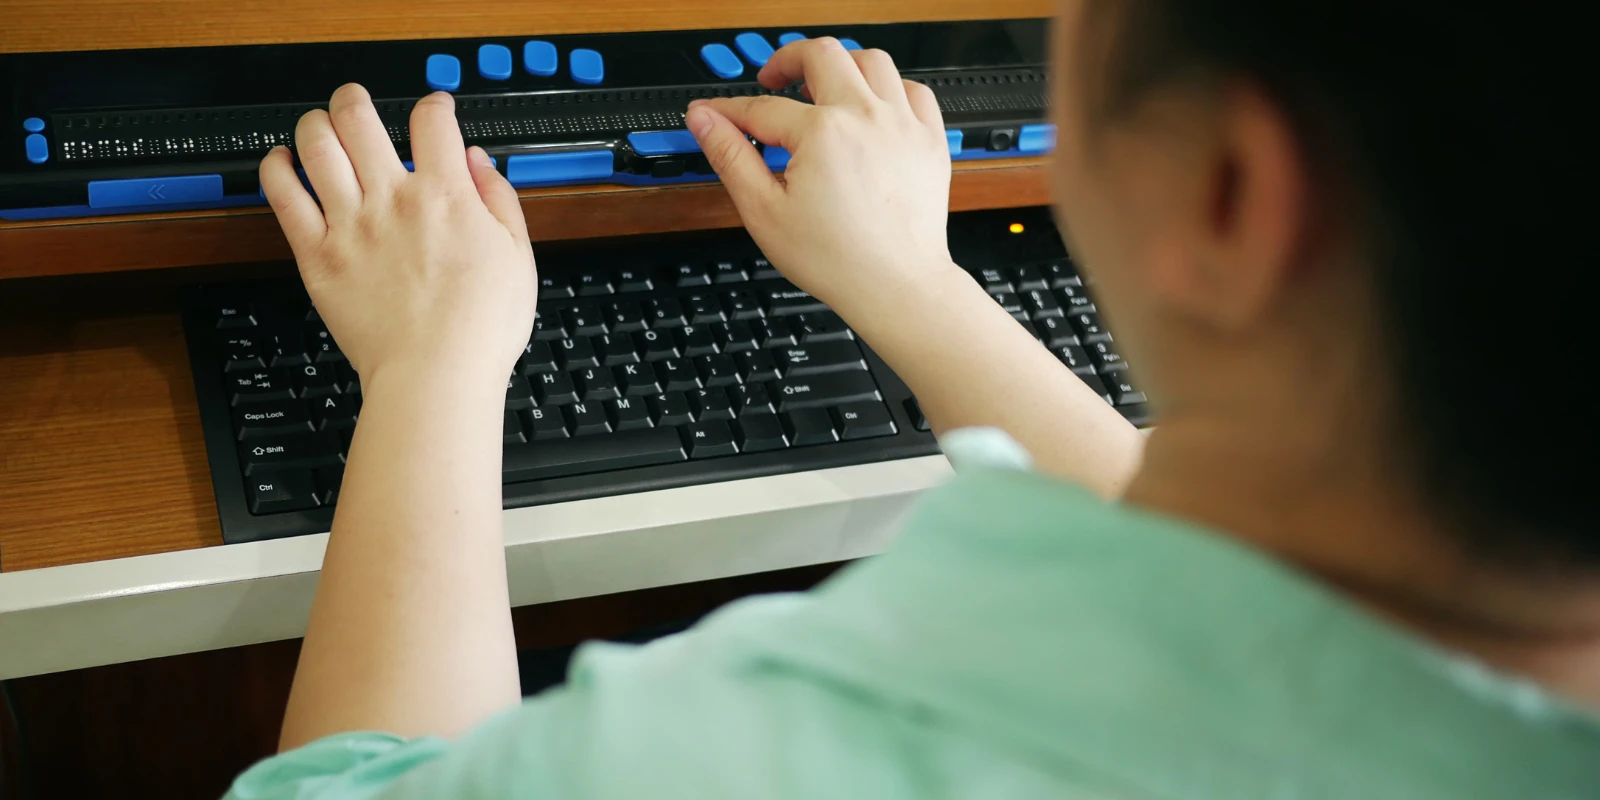 Na zdjęciu widzimy osobę z niepełnosprawnością, która korzysta z linijki Braille'a umieszczonej na biurku, nad klawiaturą komputera. Linijka Braille'a to urządzenie, które umożliwia osobom niewidomym lub niedowidzącym czytanie tekstu wyświetlanego na ekranie komputera poprzez wypukłe kropki tworzące alfabet Braille'a. Osoba ma położone dłonie na linijce, co sugeruje, że czyta lub orientuje się w tekście. Obok linijki Braille'a znajduje się standardowa klawiatura komputera. Całość wygląda na środowisko pracy dostosowane do potrzeb osób z dysfunkcją wzroku.